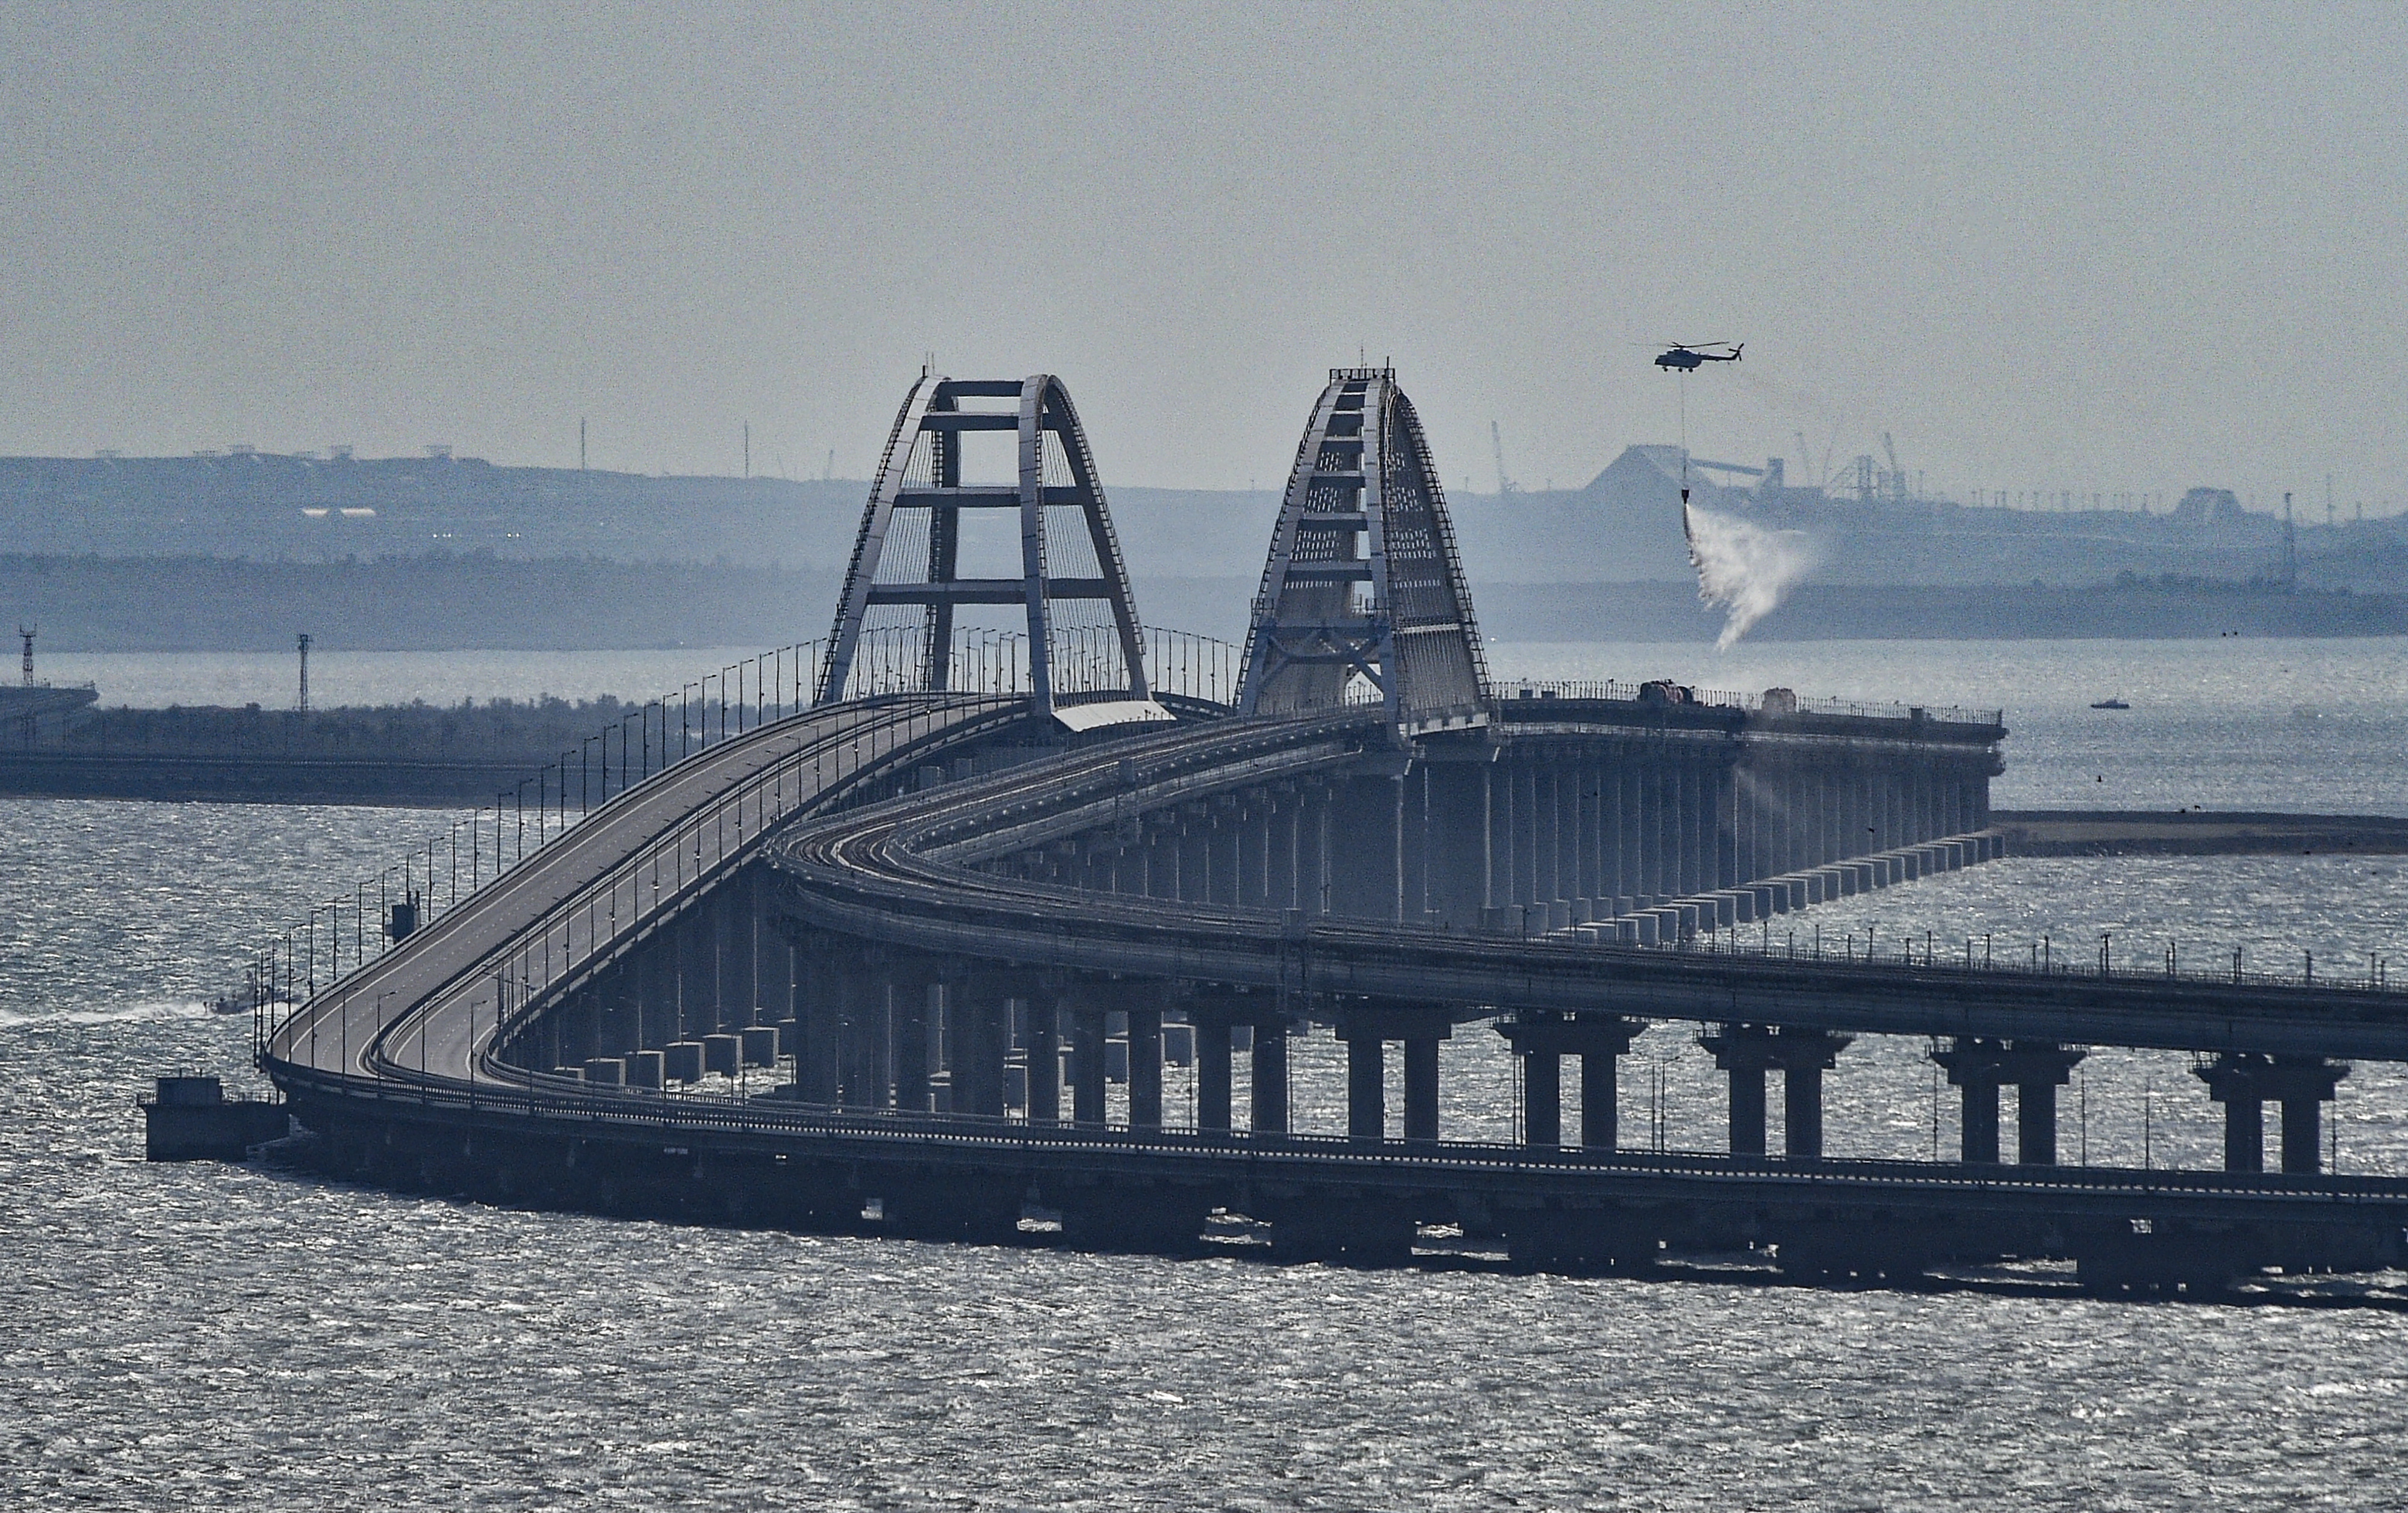 Експлозия и пожар на Кримския мост